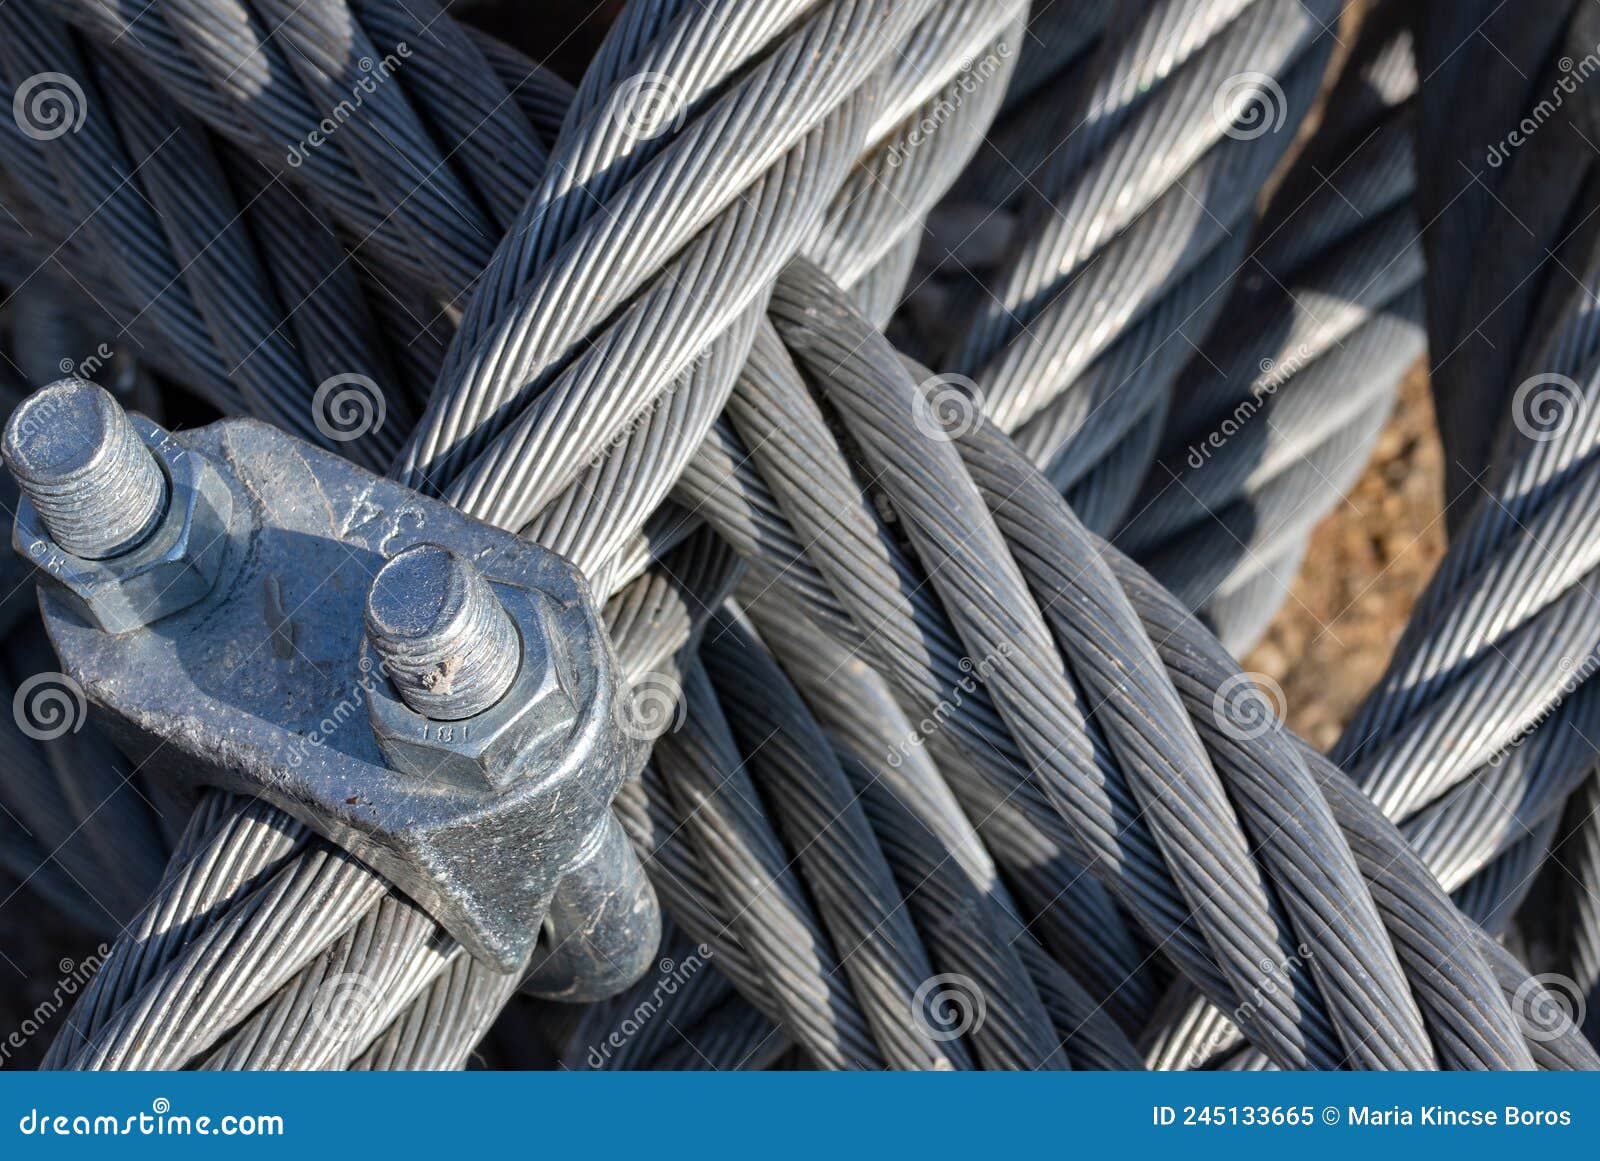 Cuerda Metálica De Cable De Acero Imagen de archivo - Imagen de objeto,  primer: 245133665